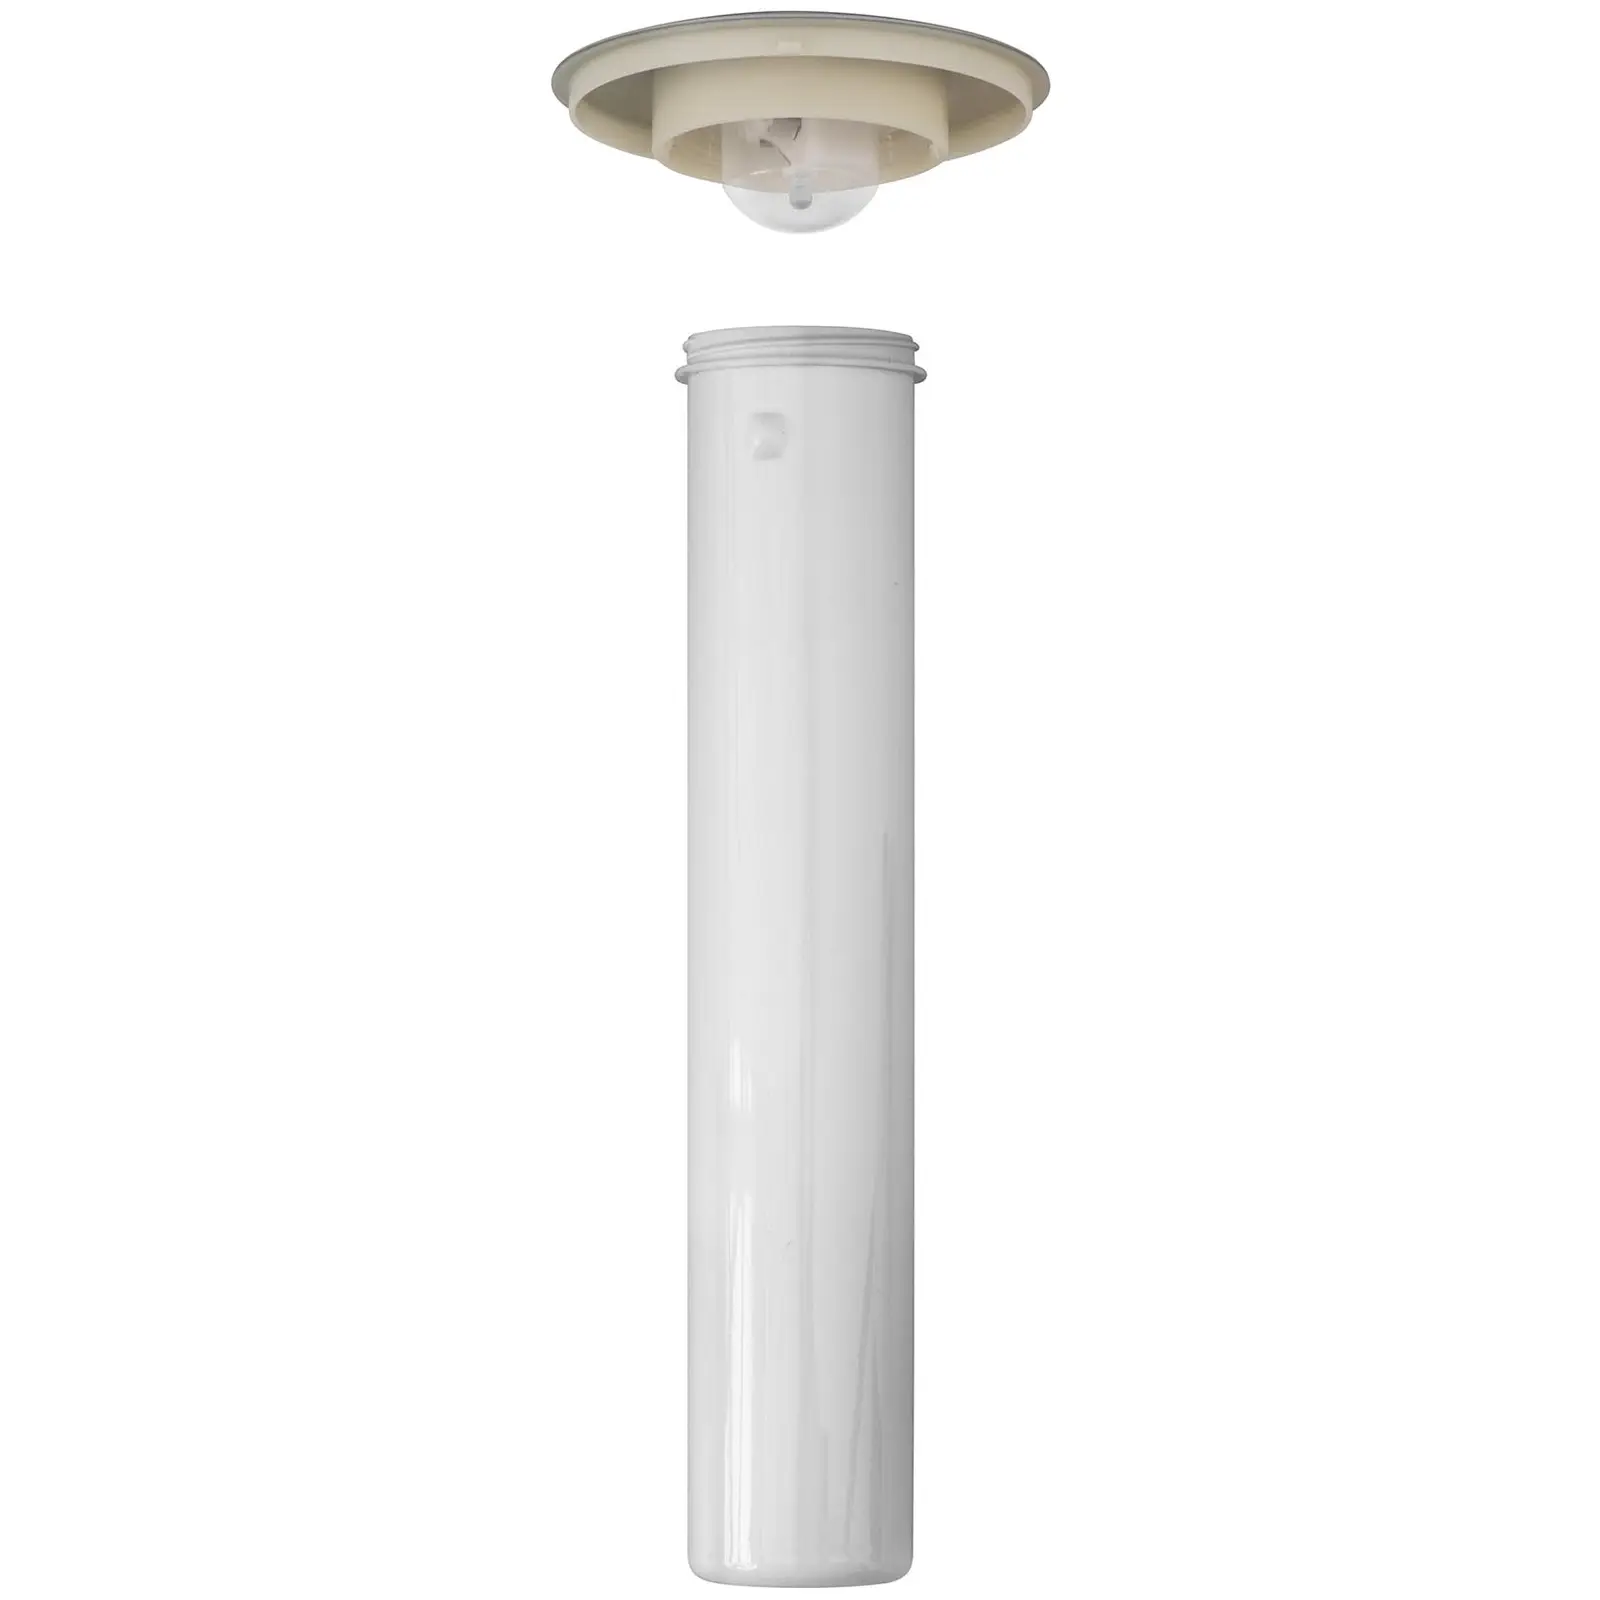 Dozator za sok - 3 L - hladilni sistem - za kozarce do 198 mm - z LED osvetlitvijo - srebrn - Royal Catering